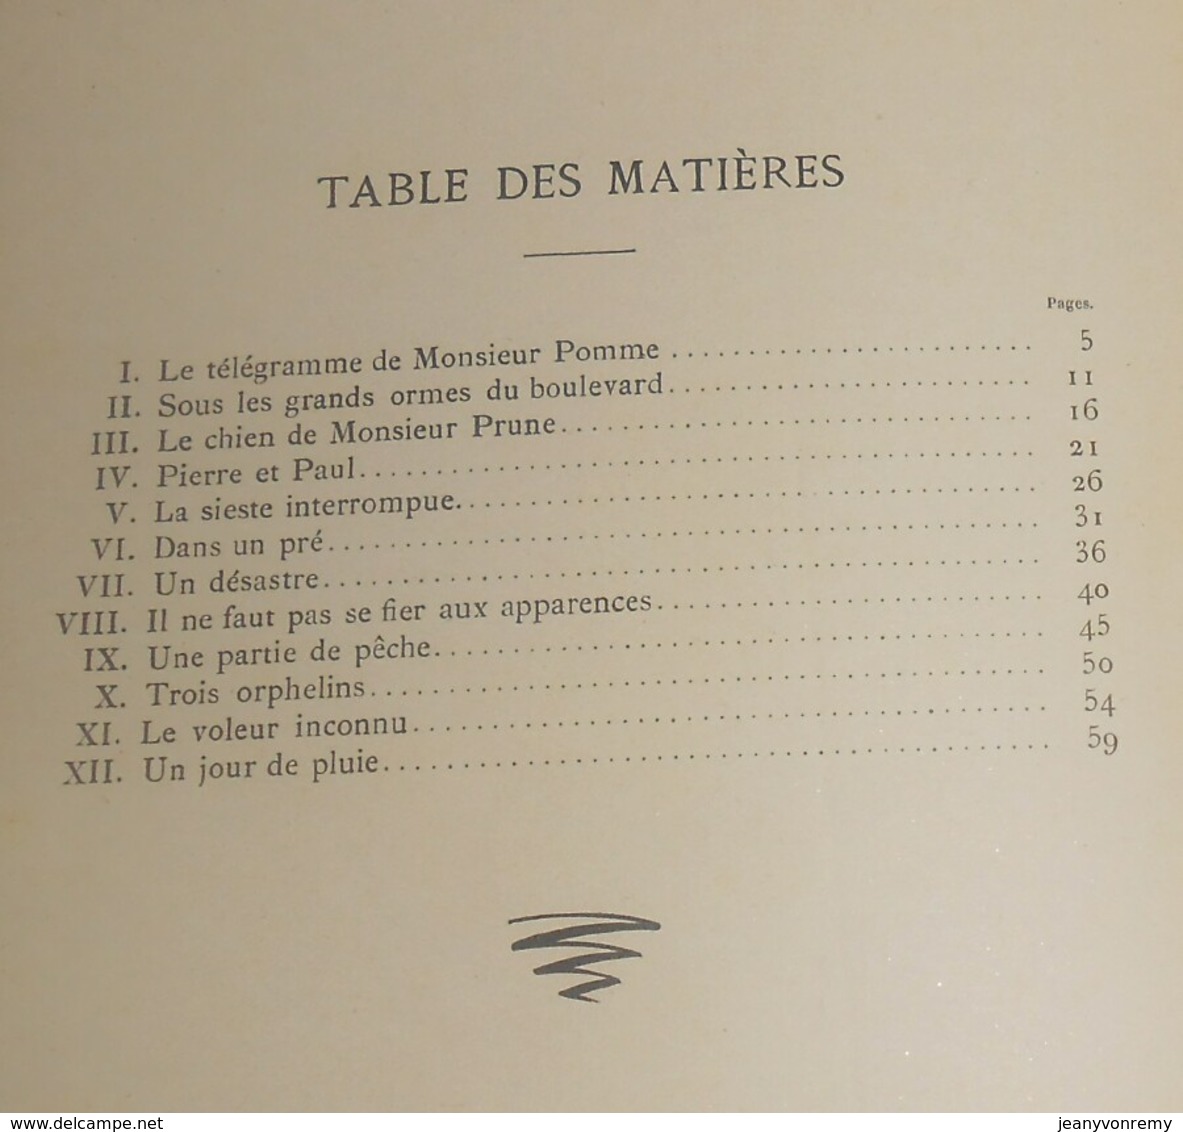 La Grammaire De L'oncle Tonton. G. Schnée. 1934. - 1901-1940